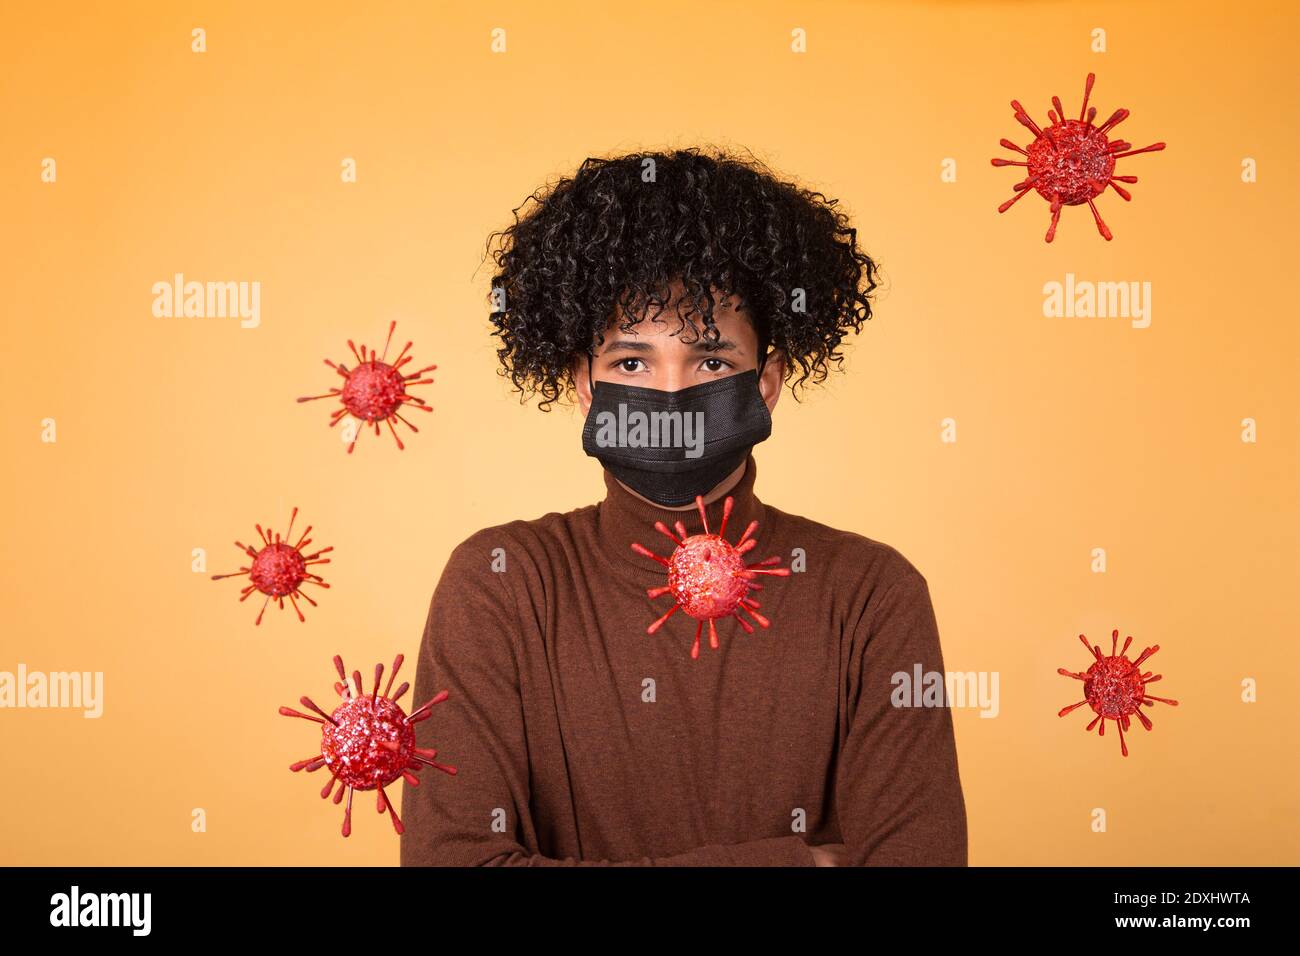 Ritratto di ragazzo afro con maschera medica su sfondo giallo con molecole batteriche. Epidemia, virus, salute. Spazio di copia Foto Stock